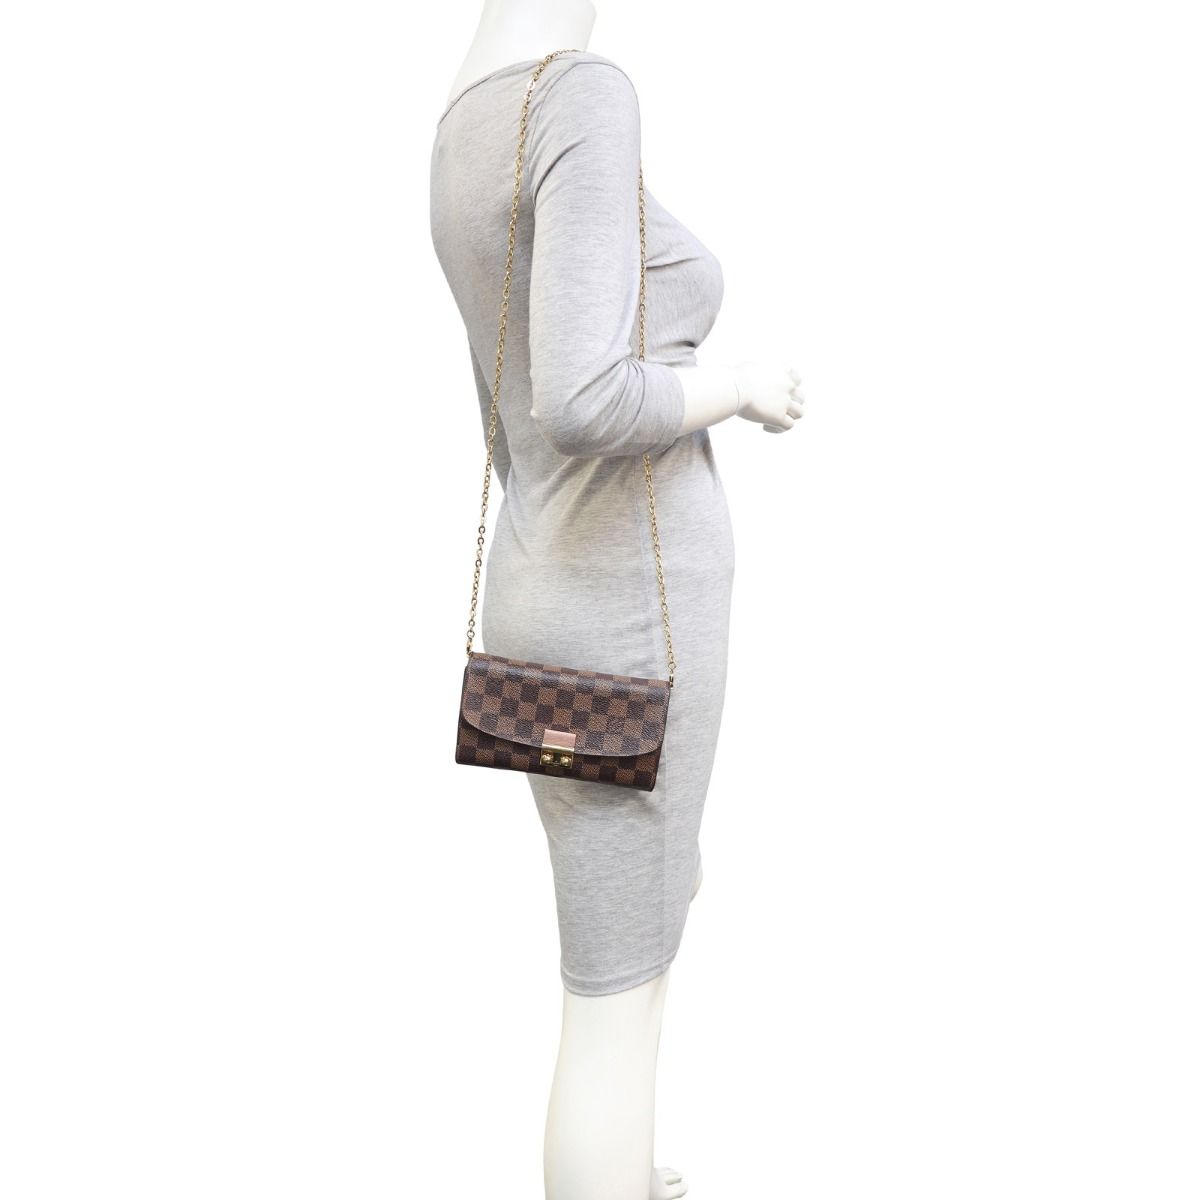 Croisette Chain Wallet NM Damier Ebene – Keeks Designer Handbags